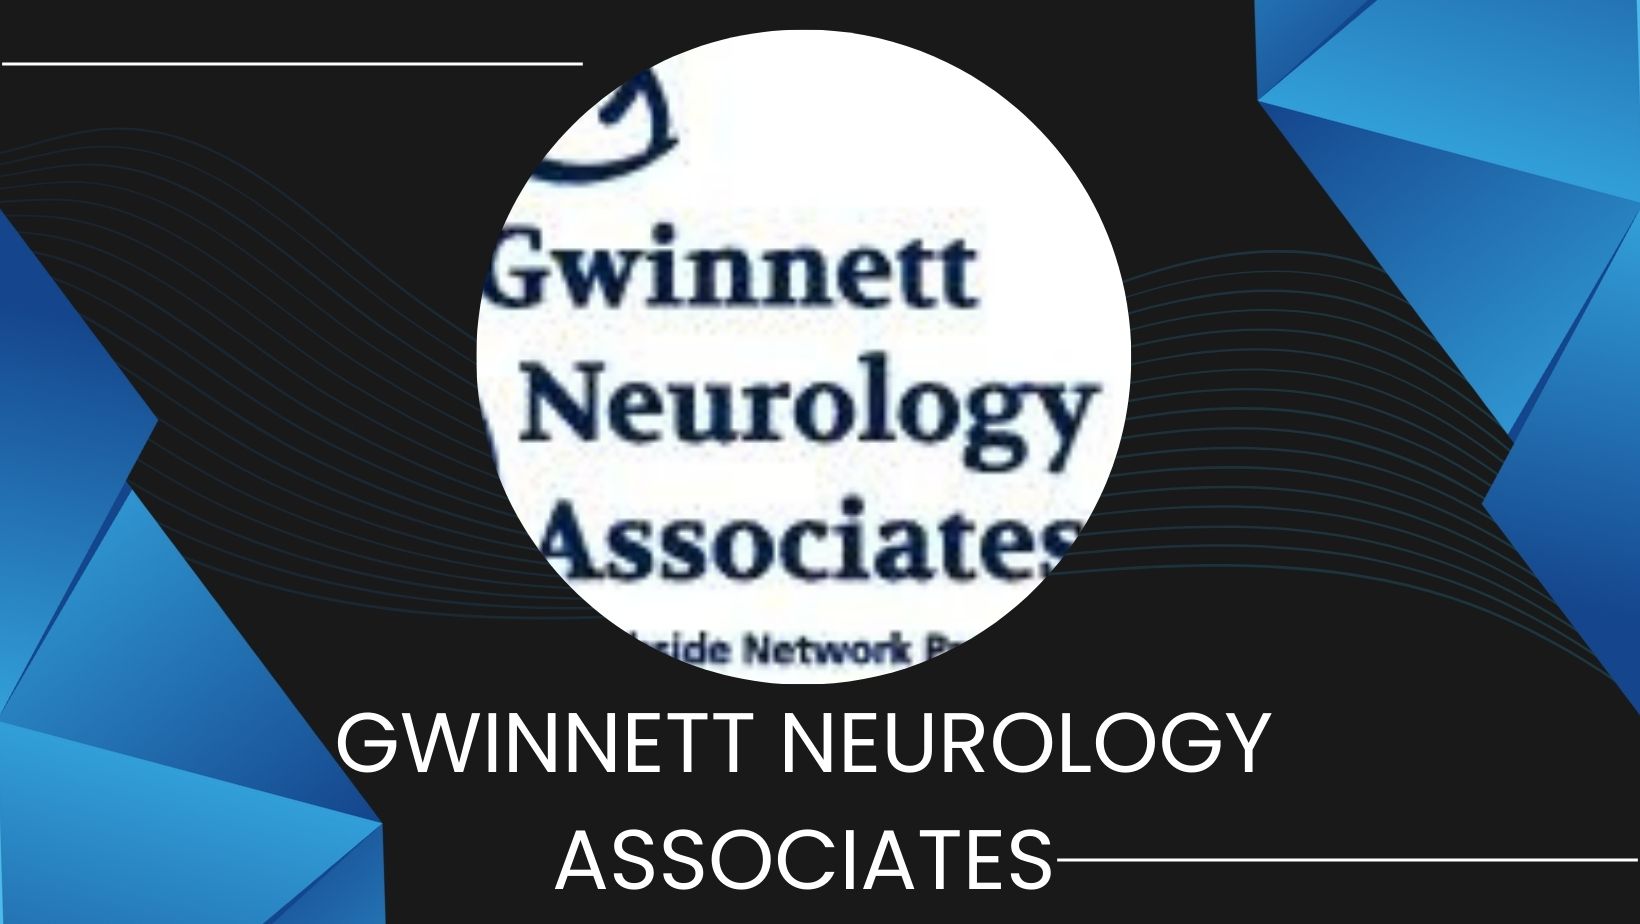 Gwinnett Neurology Associates